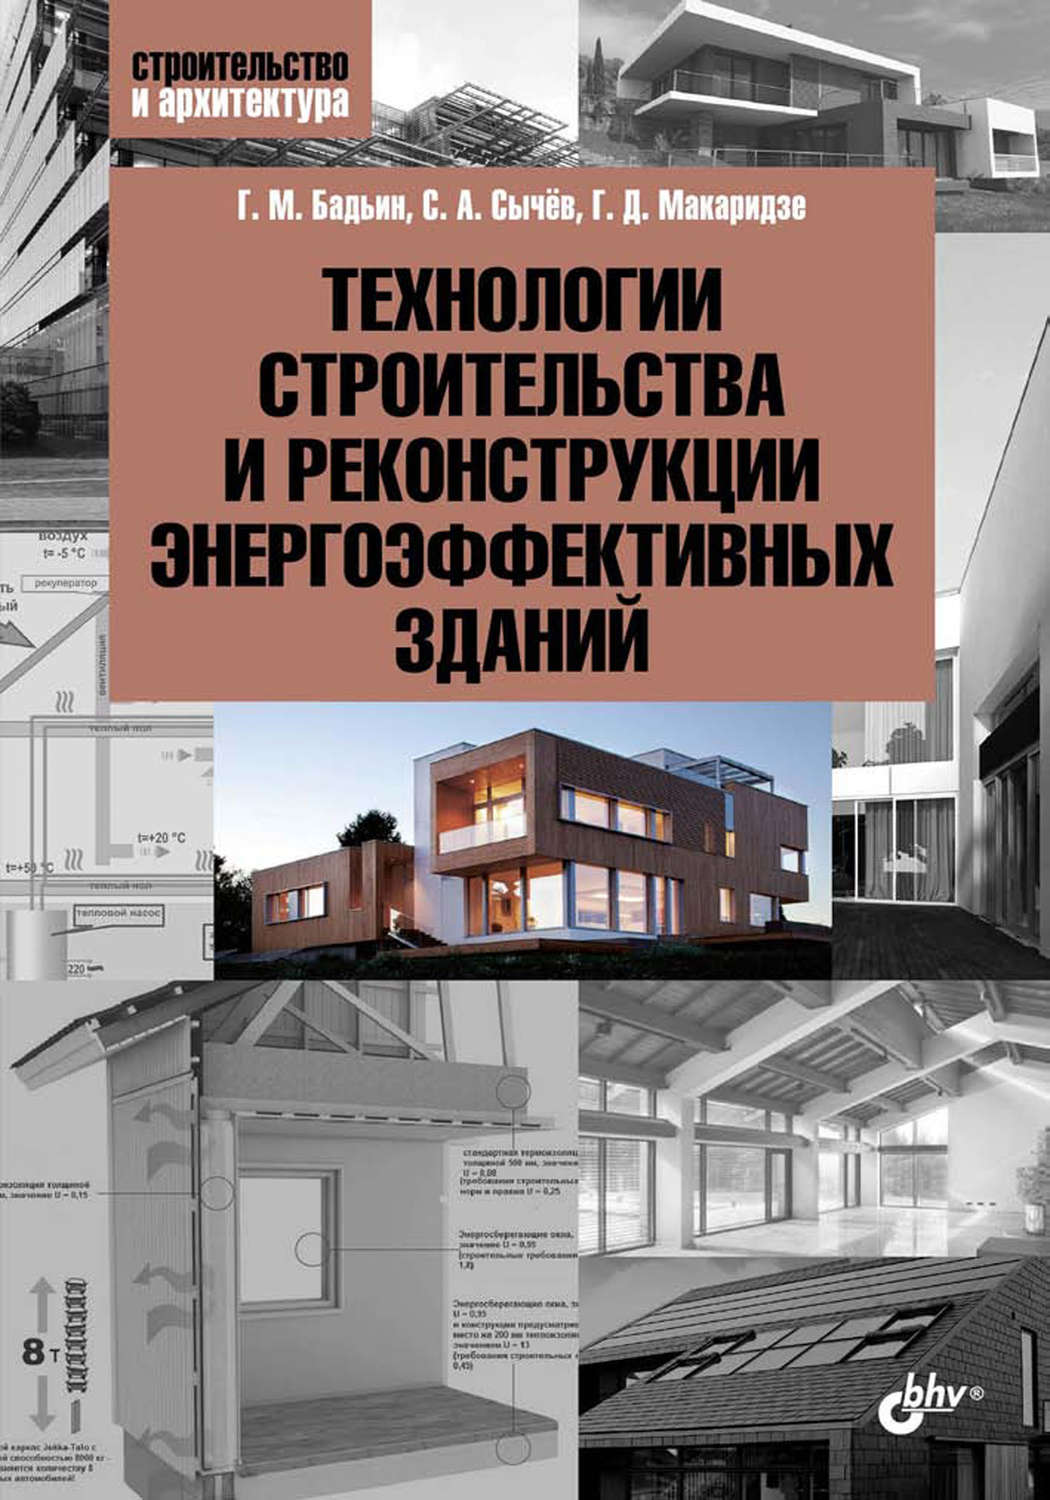 Конструкции зданий и сооружений книга